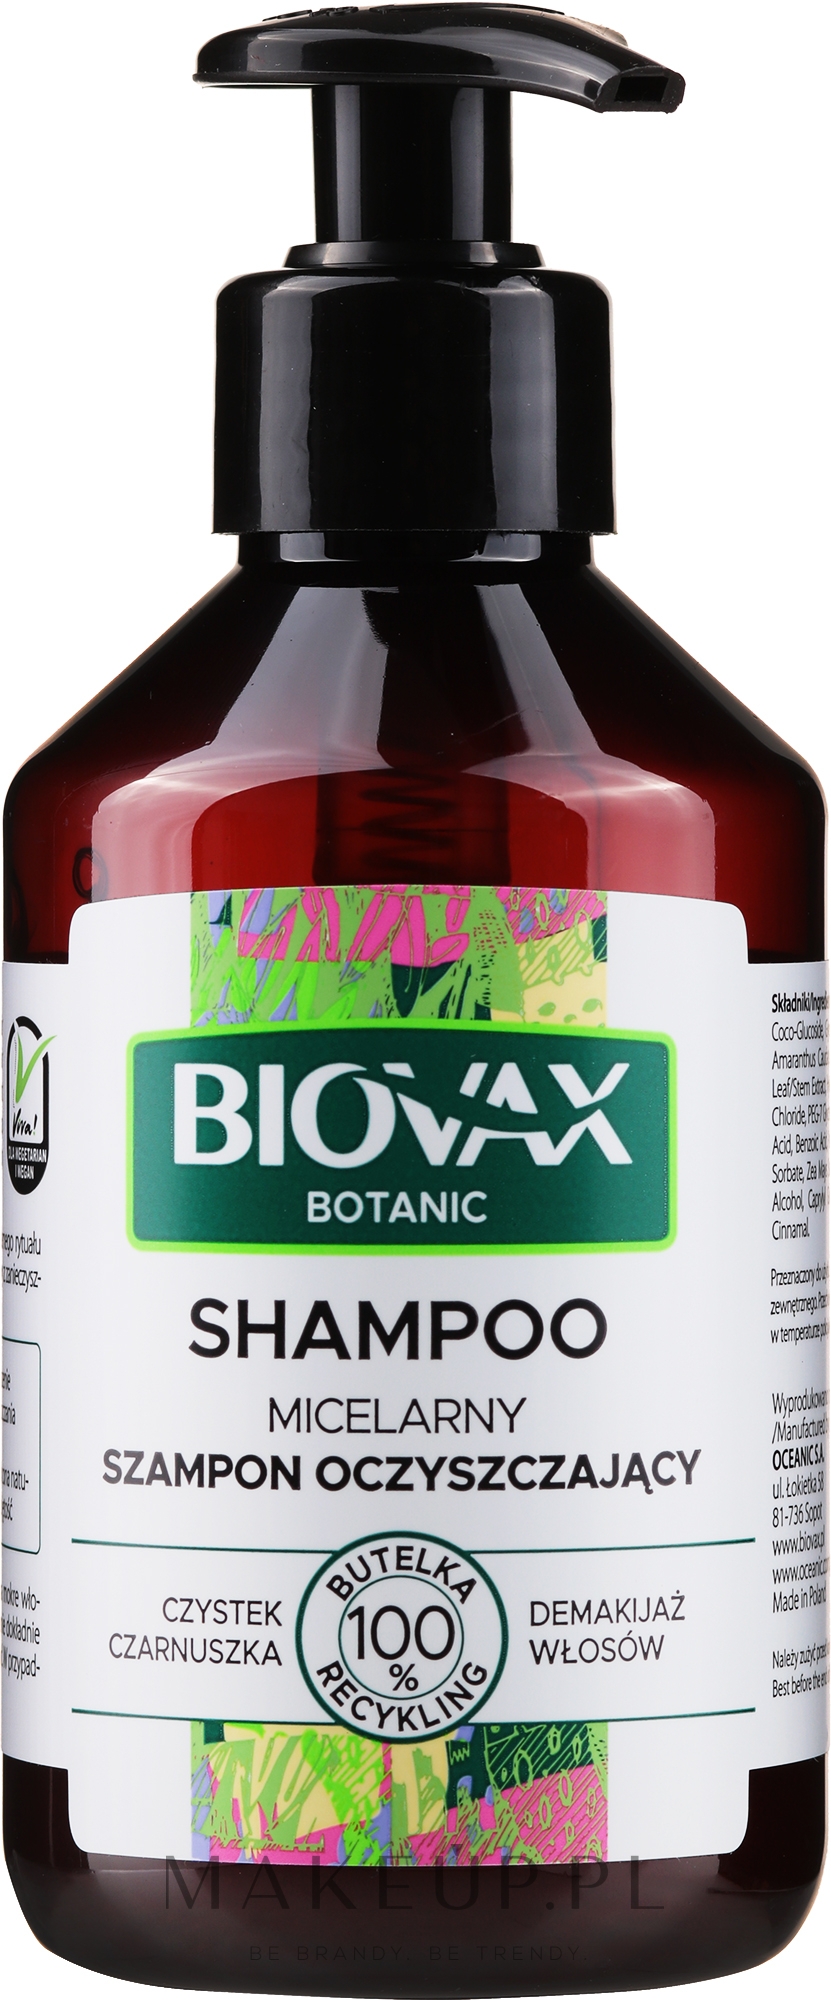 biovax szampon oczyszczający czystek czarnuszka